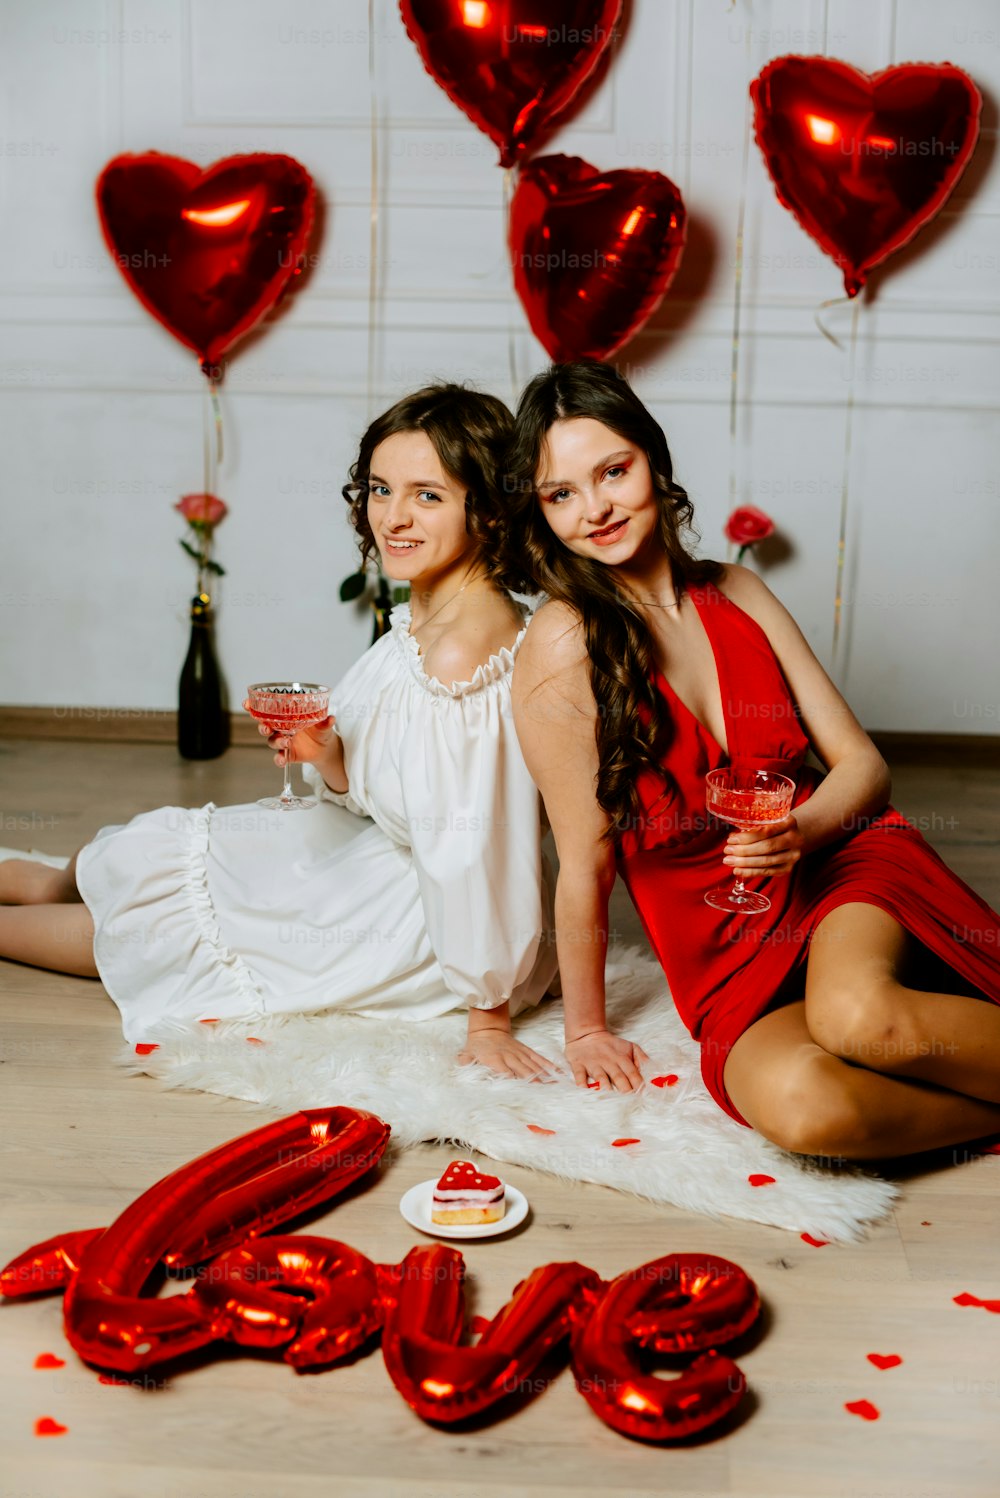 Zwei Frauen sitzen mit roten Luftballons auf dem Boden